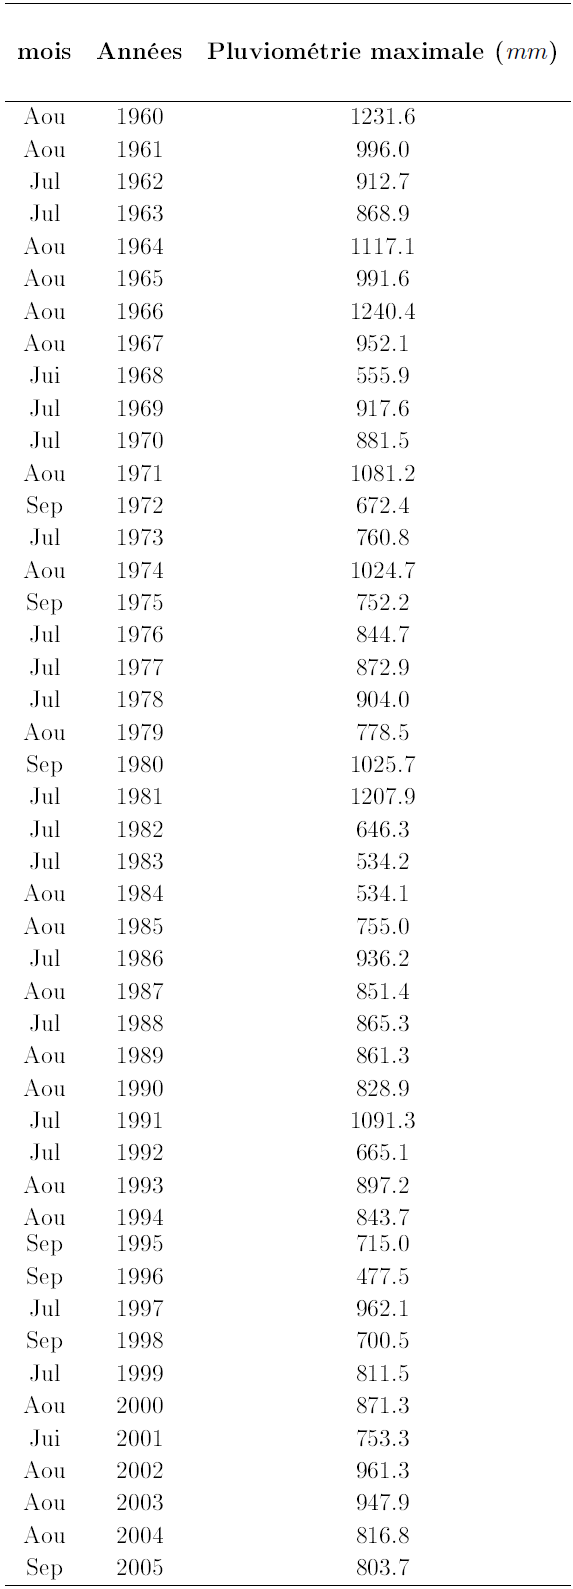 Pluviométrie maximales annuelles issues des cumuls mensuels à Douala période 1960-2005